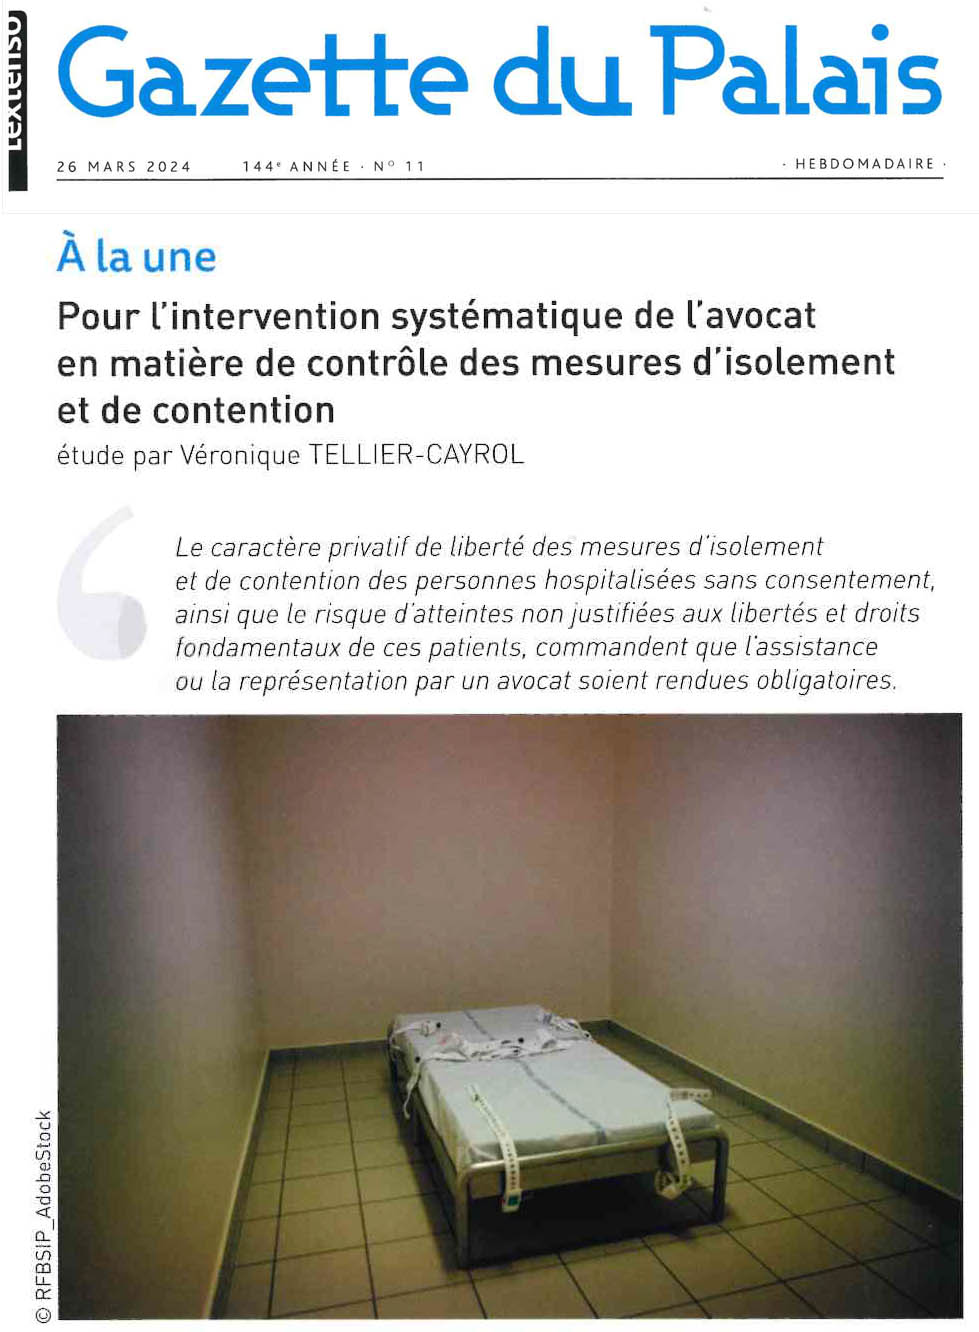 Gazette du Palais n°11 du 26 mars 2024